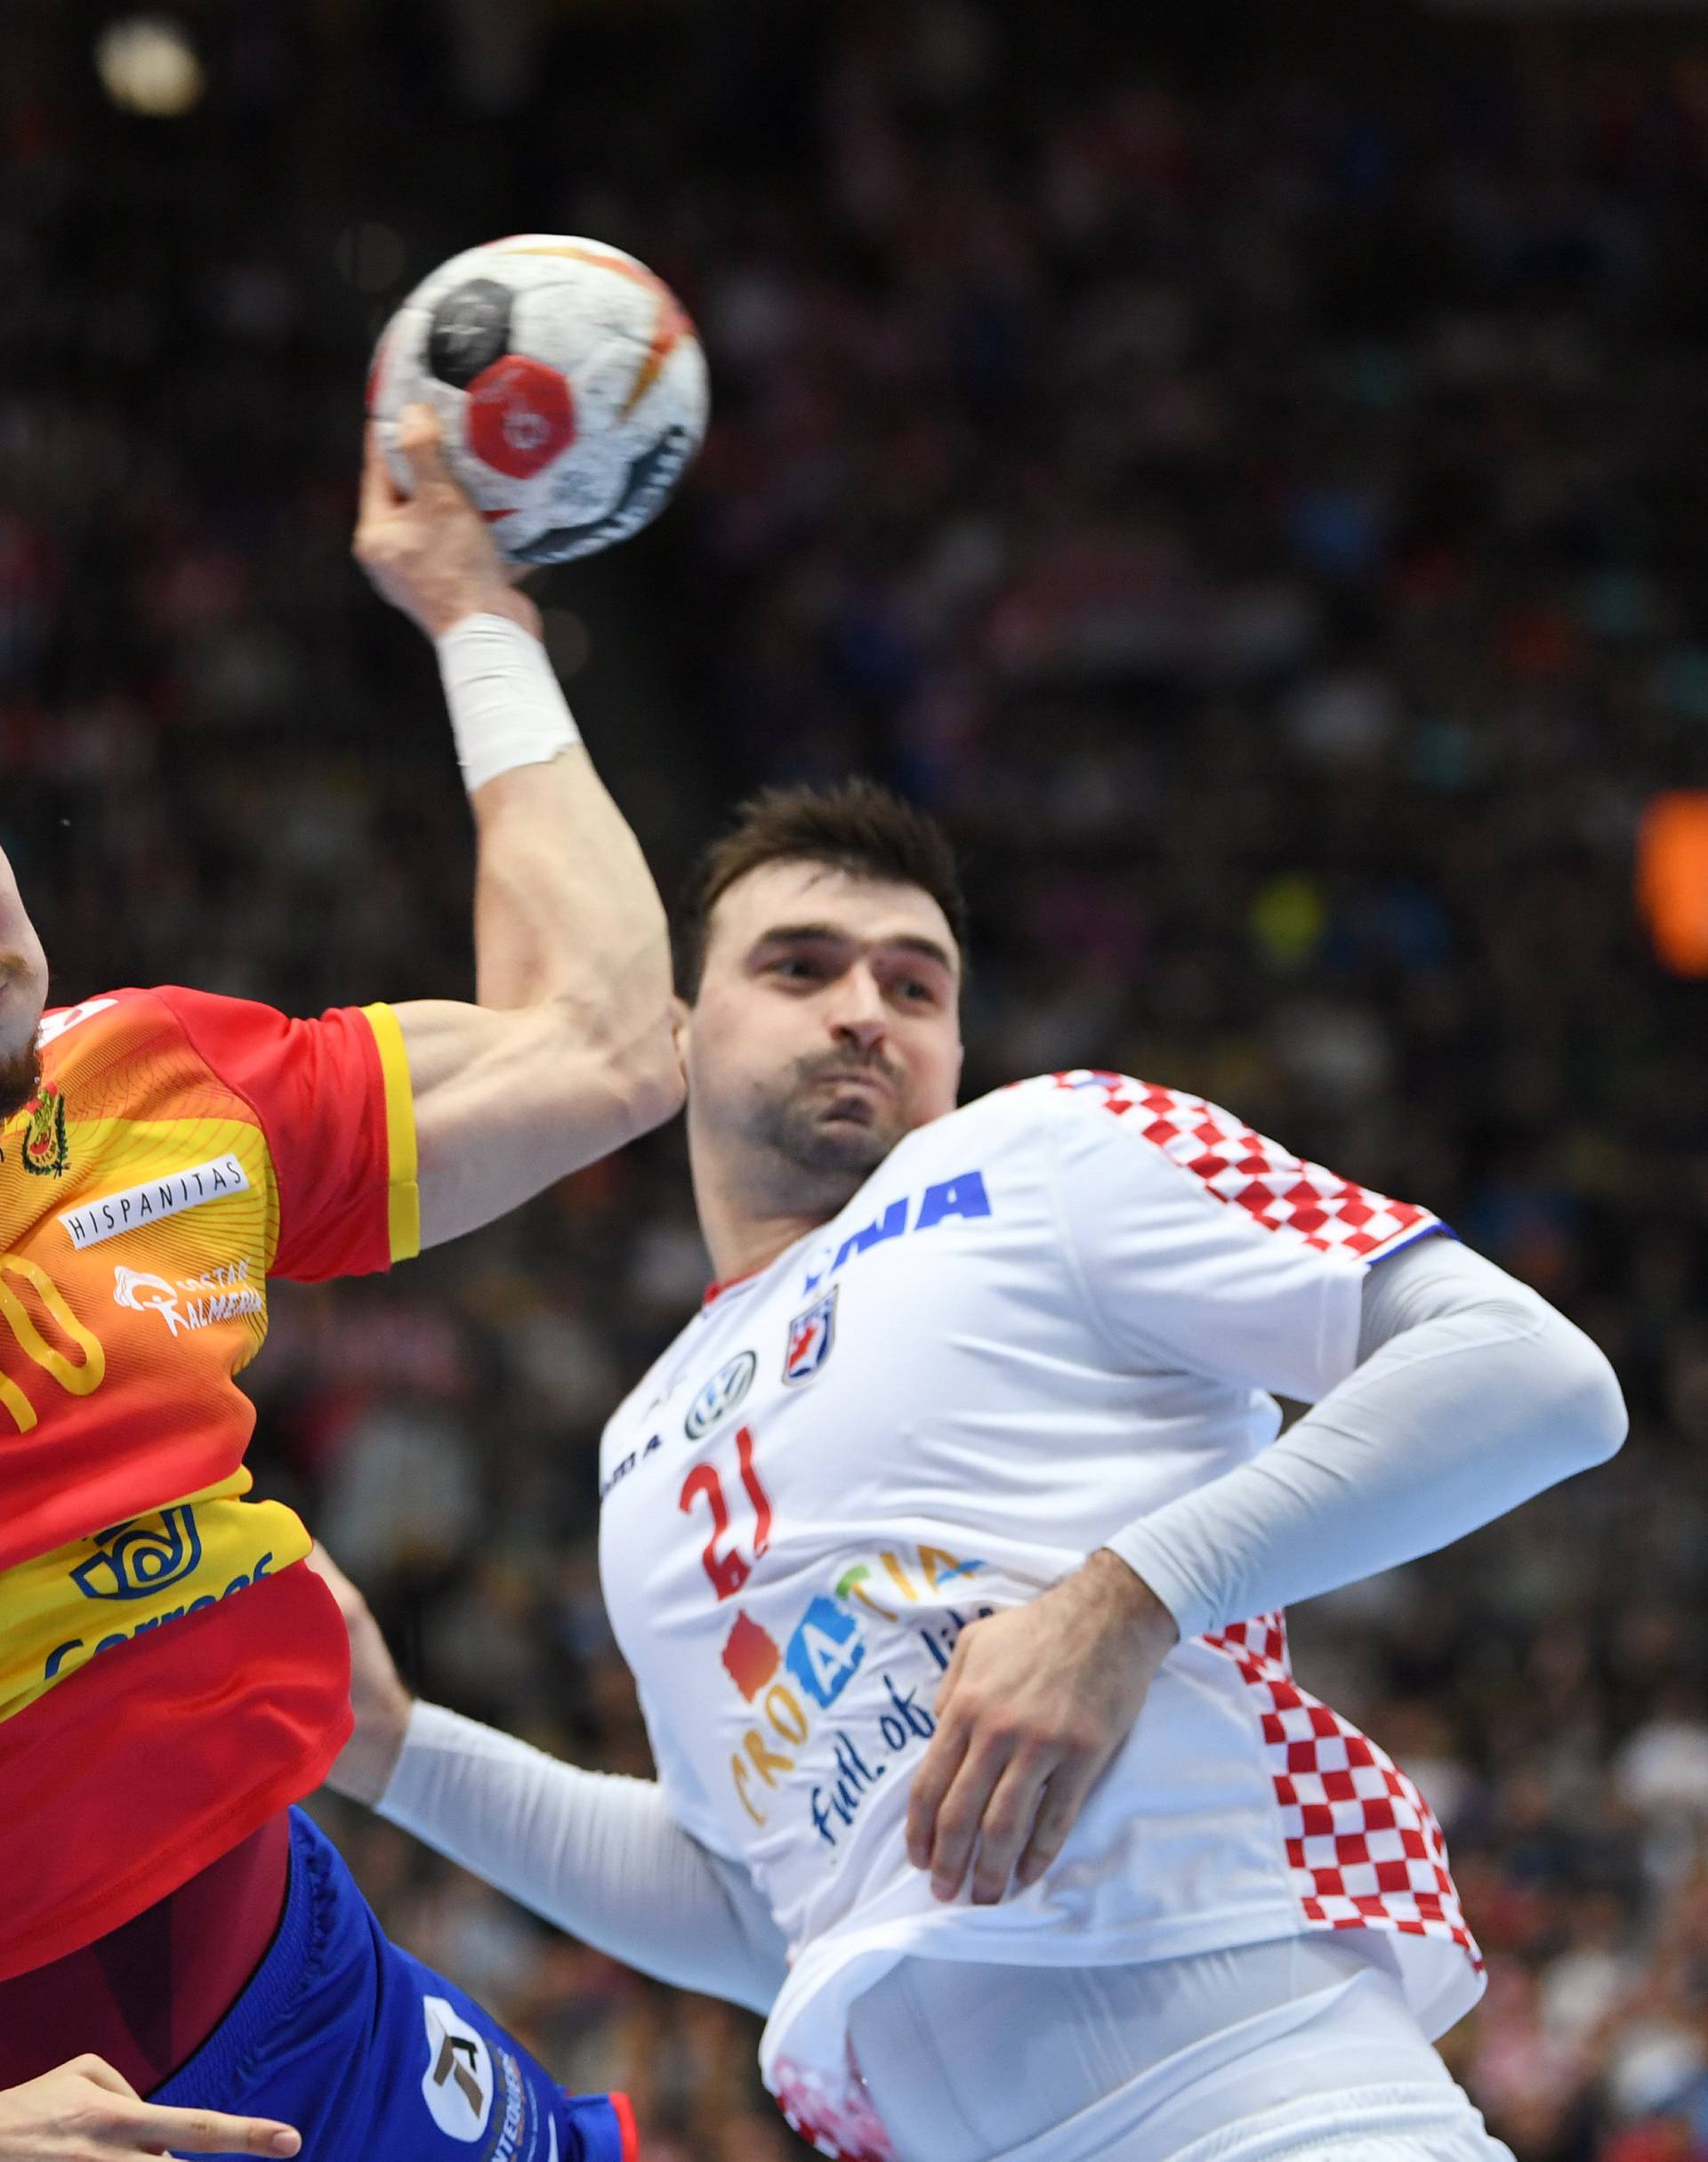 IHF Handball World Championship - Germany & Denmark 2019 - Group B - Spain v Croatia